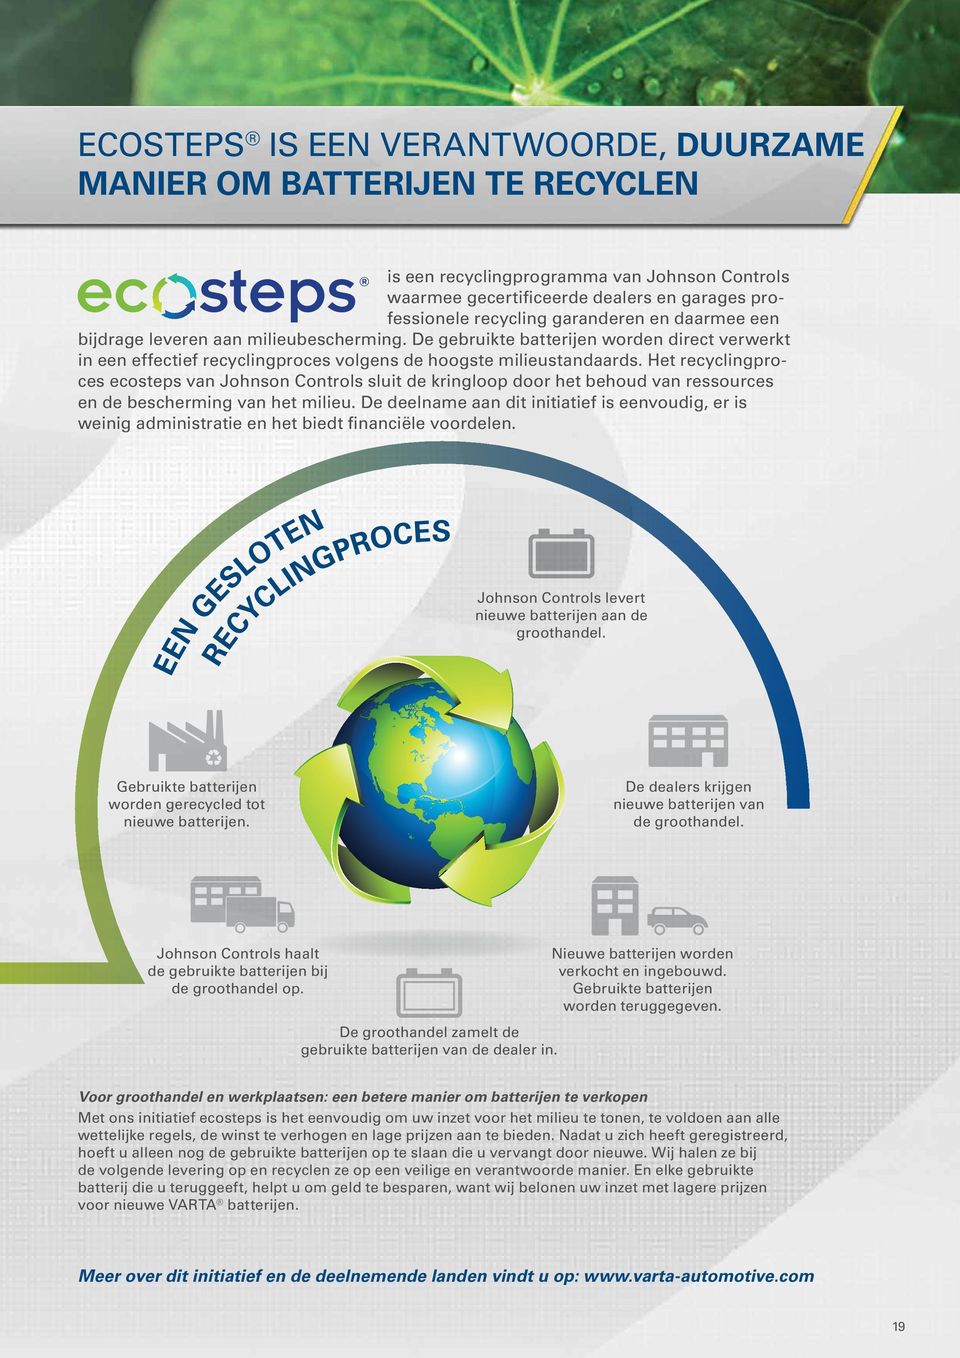 Het recyclingproces ecosteps van Johnson Controls sluit de kringloop door het behoud van ressources en de bescherming van het milieu.